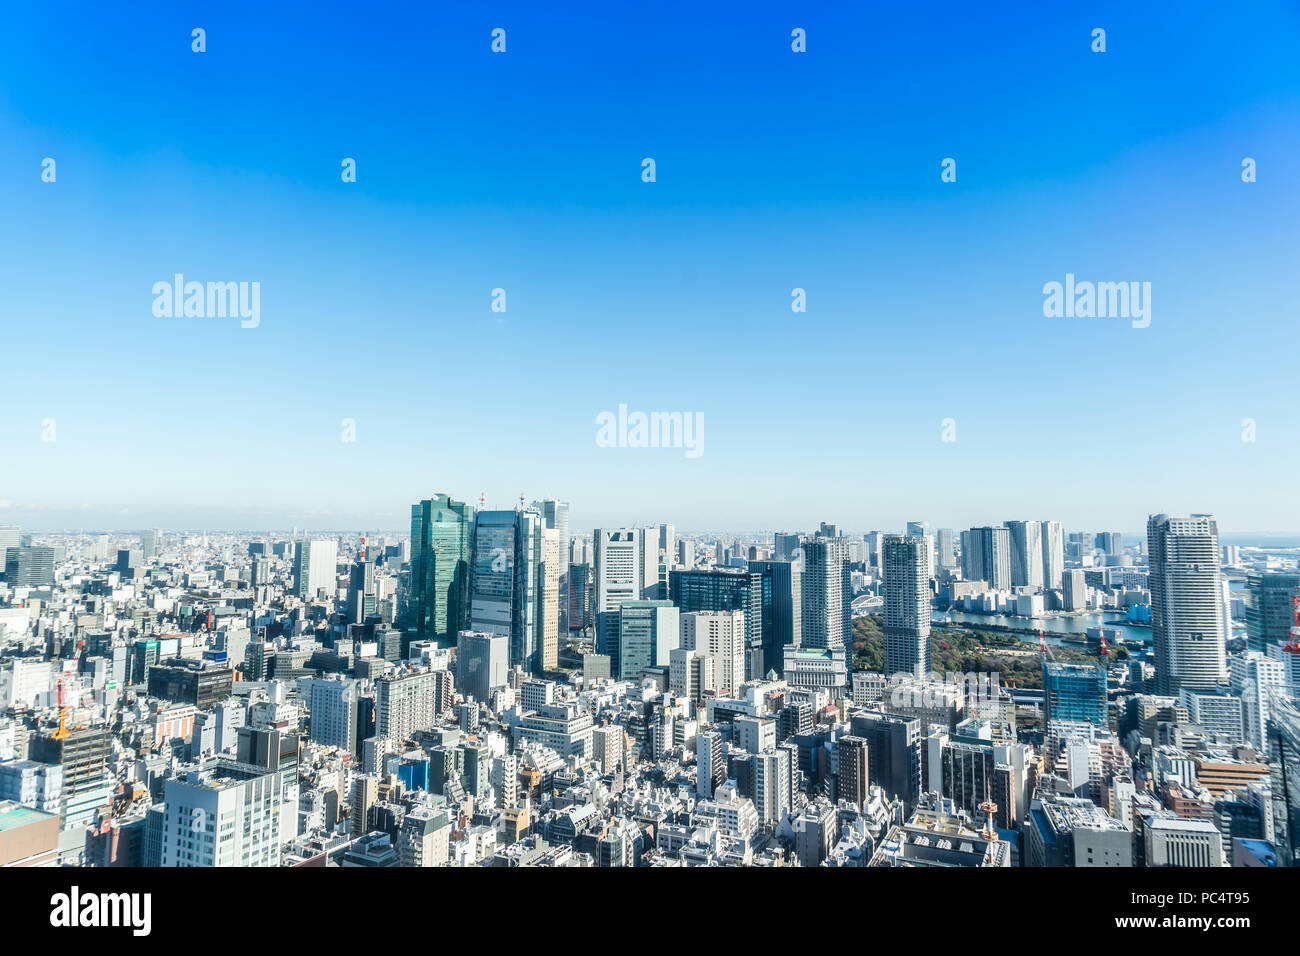 Asien Business Konzept für Immobilien und Corporate Bau - Panoramablick auf die moderne Skyline der Stadt aus der Vogelperspektive Luftaufnahme in der Nähe von Tokyo Tower unter hellen Su Stockfoto